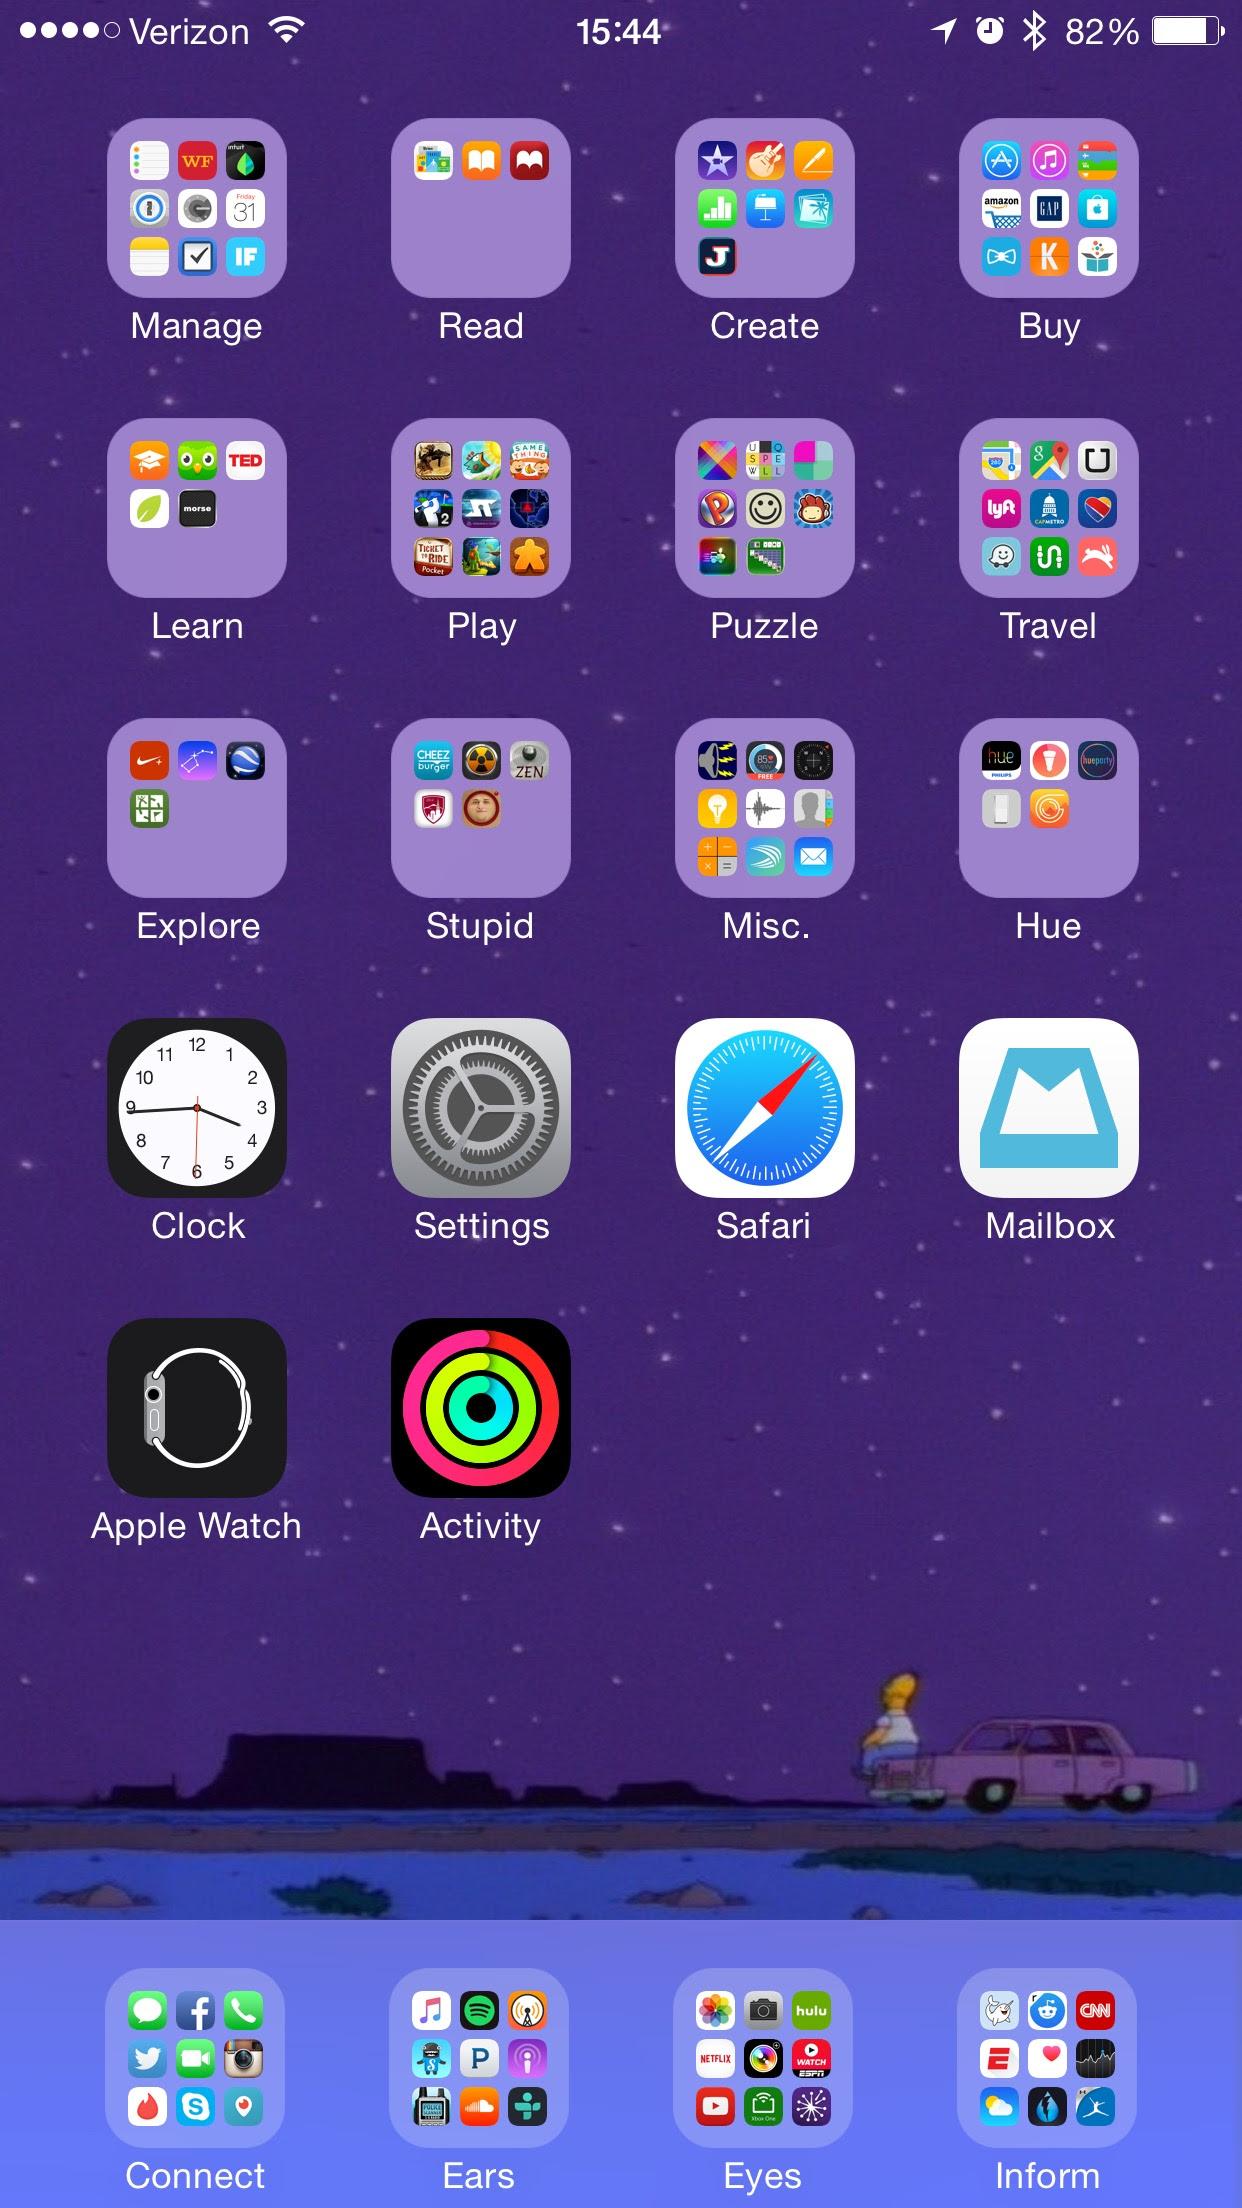 simpsons fondos de pantalla iphone,violeta,púrpura,captura de pantalla,tecnología,fuente